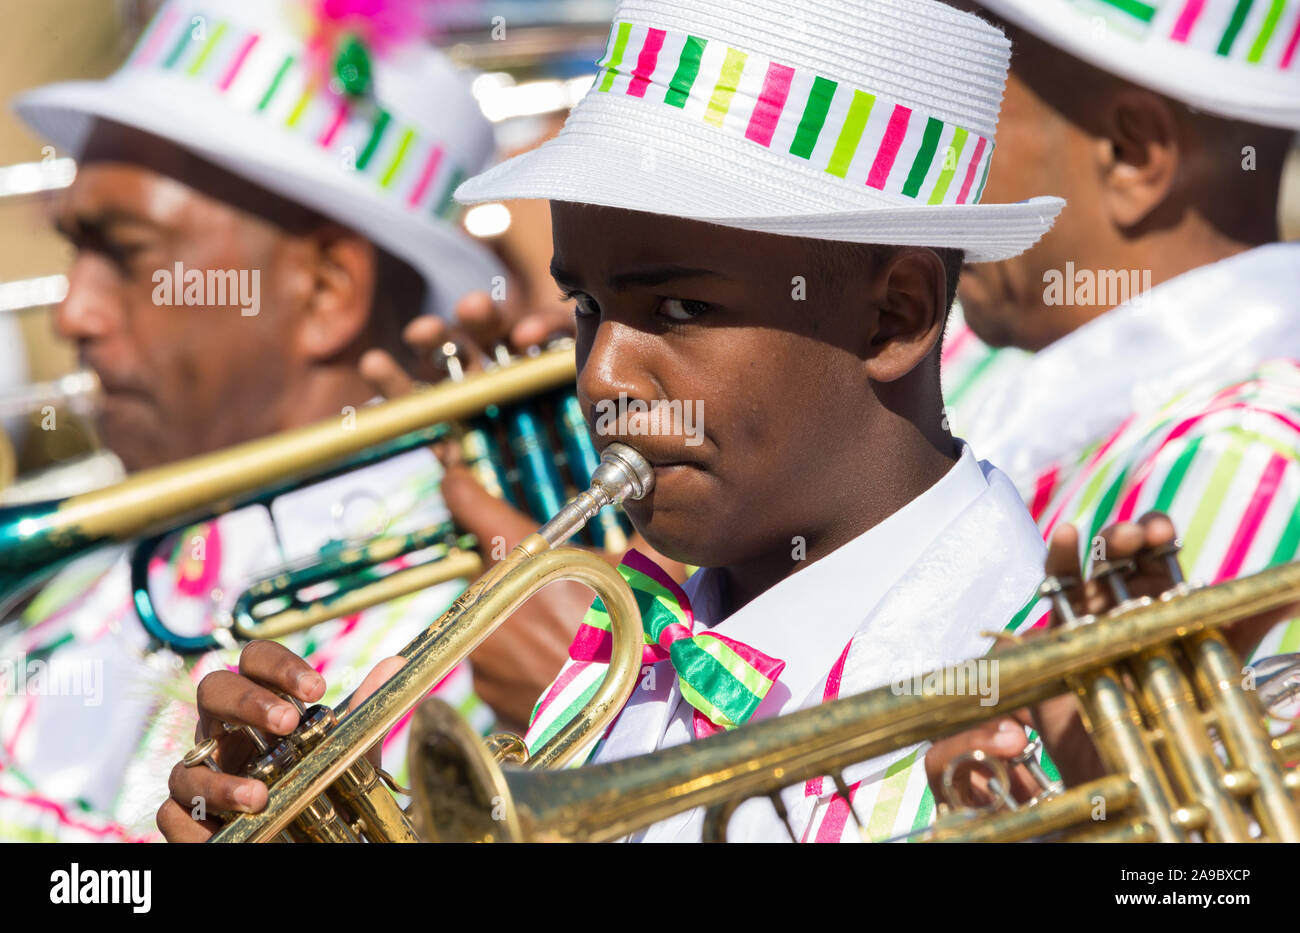 Mixed Race boy à jouer de la trompette, bugle, instrument de musique dans un groupe lors d'une célébration de carnaval street parade à Cape Town, Afrique du Sud, le Nouvel An Banque D'Images